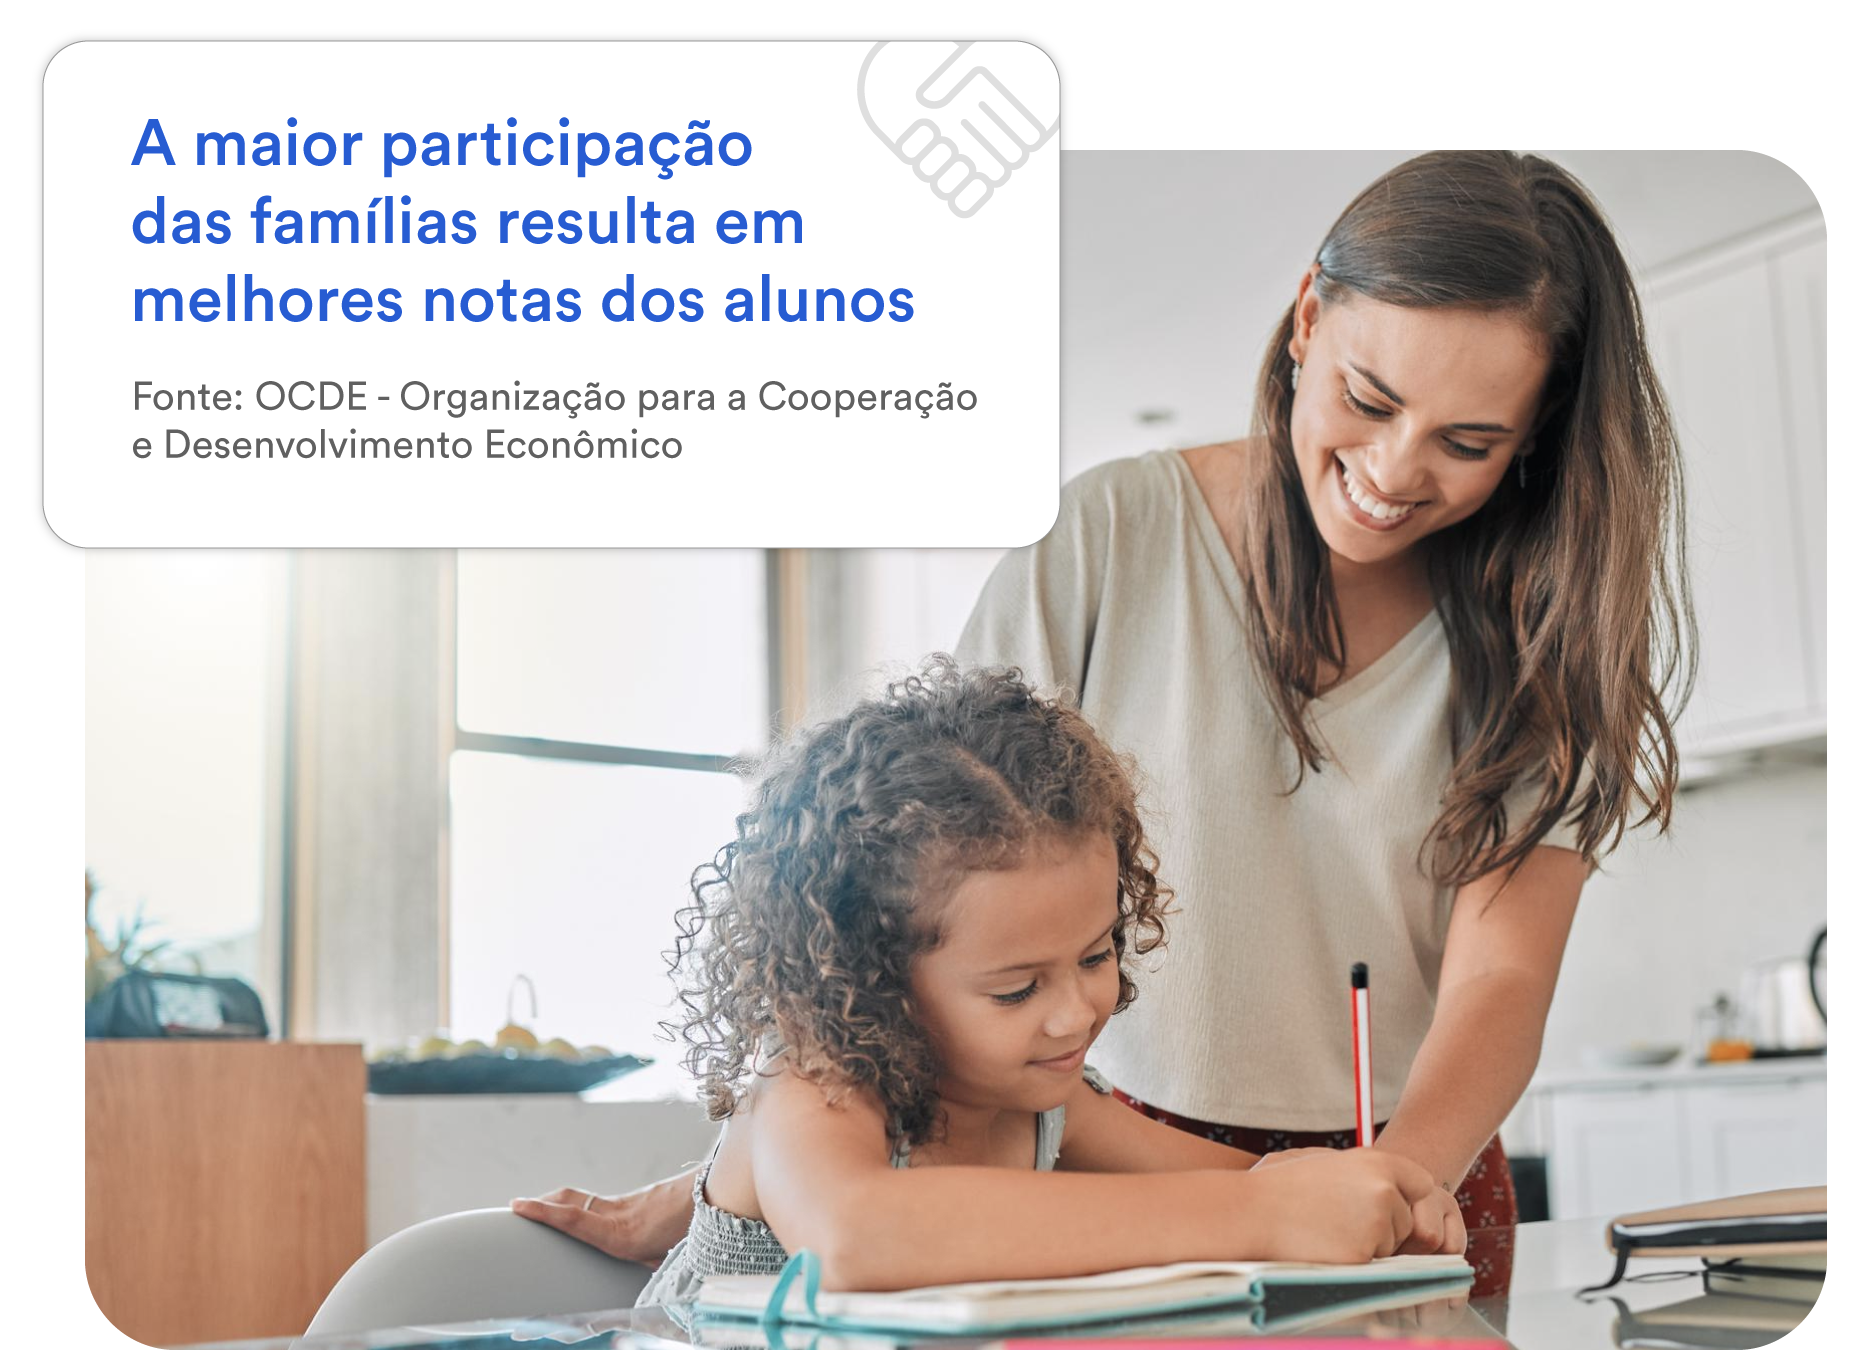 A maior participação das famílias resulta em melhores notas dos alunos. Fonte: OCDE Organização para a Cooperação e Desenvolvimento Econômico